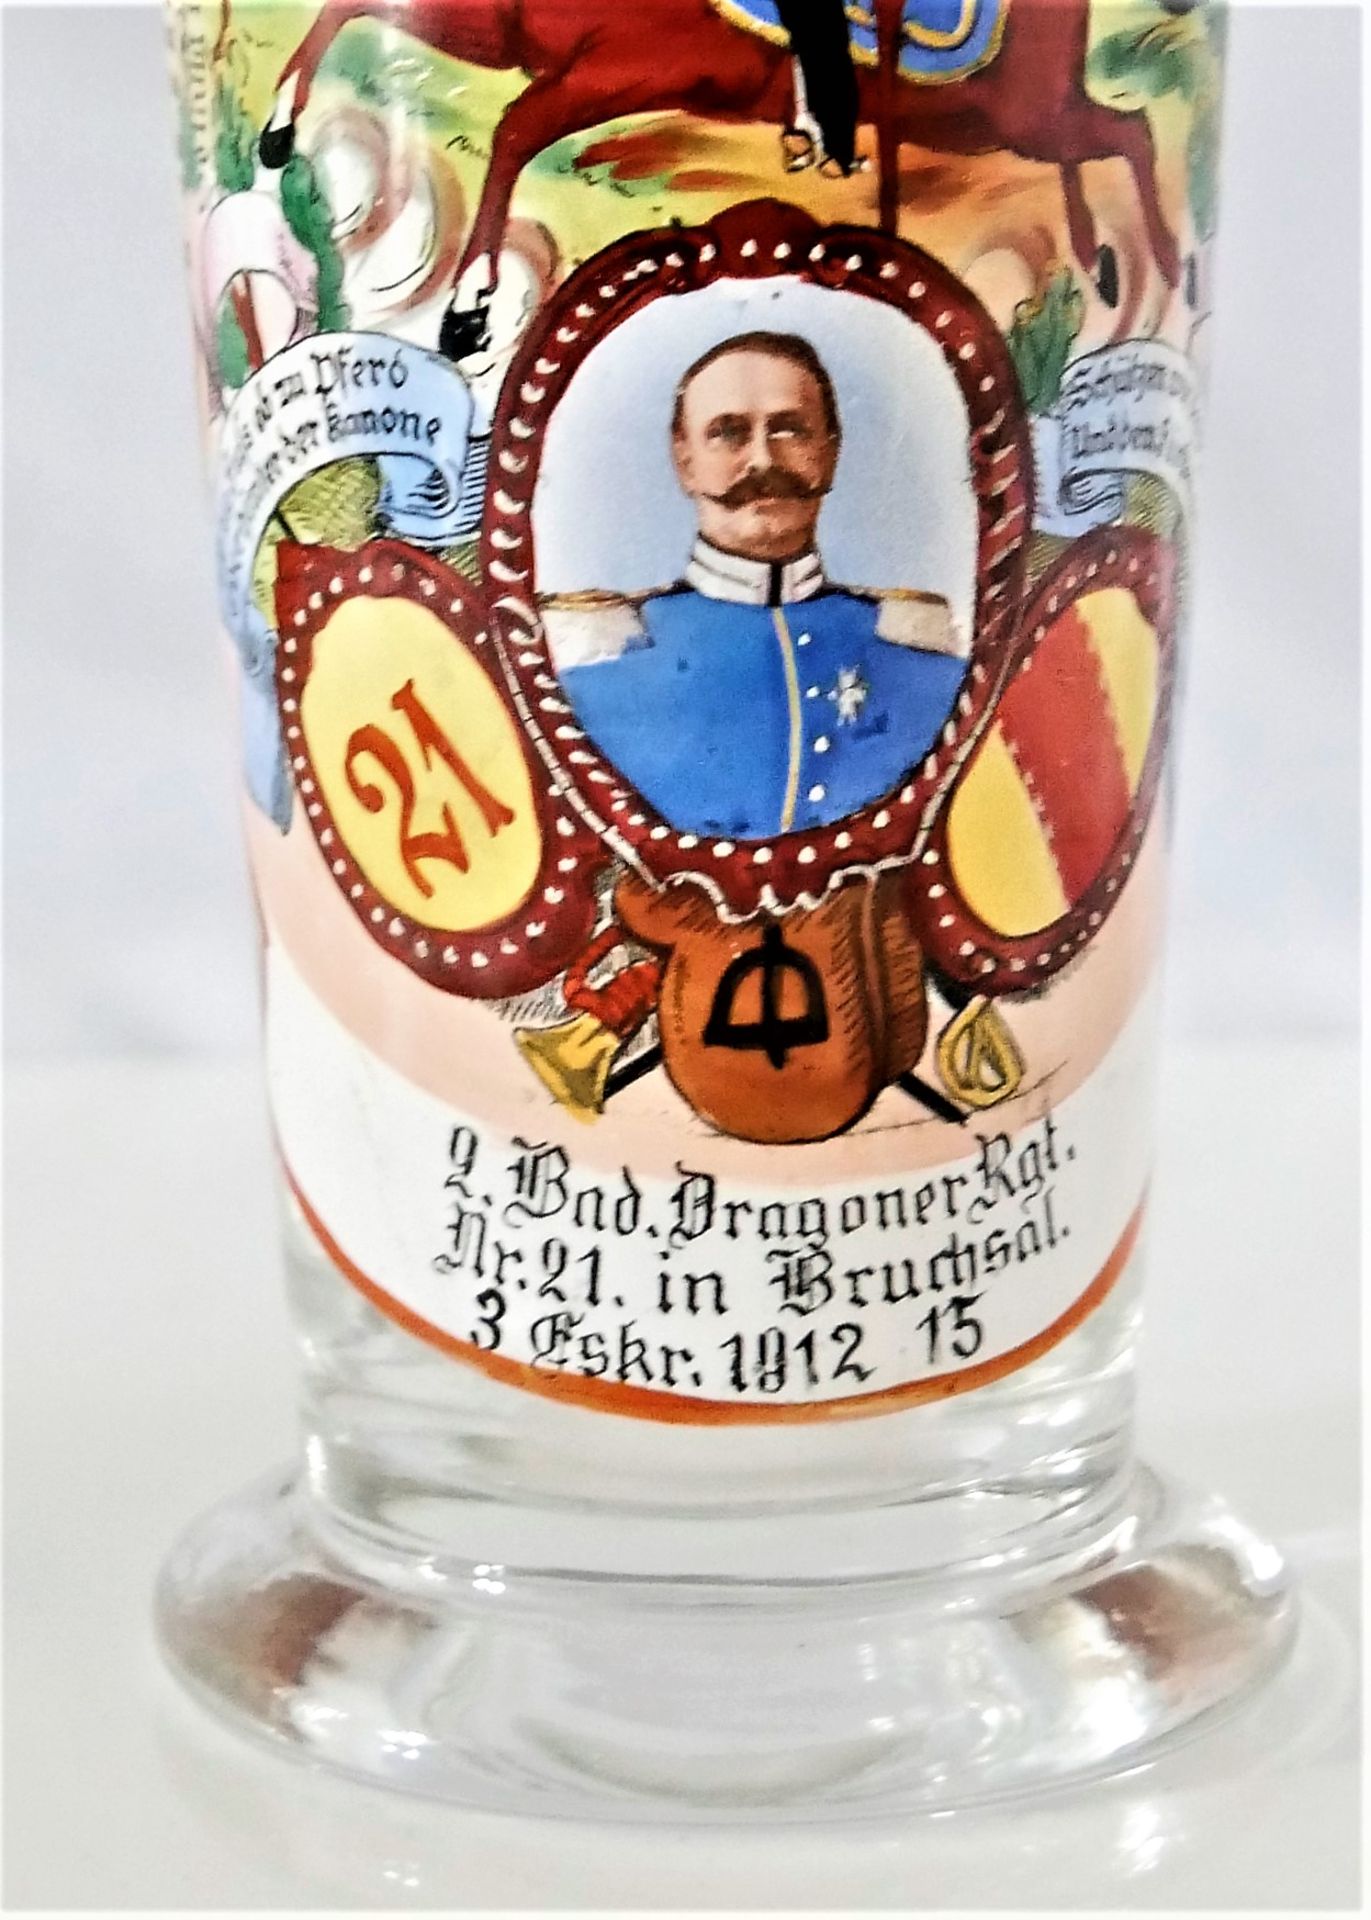 Dragoner Regimentsglas 0,4 ltr., Zur Erinnerung an die Hälftefeier am 25. März 1914, Jahrgang 1912- - Image 2 of 3